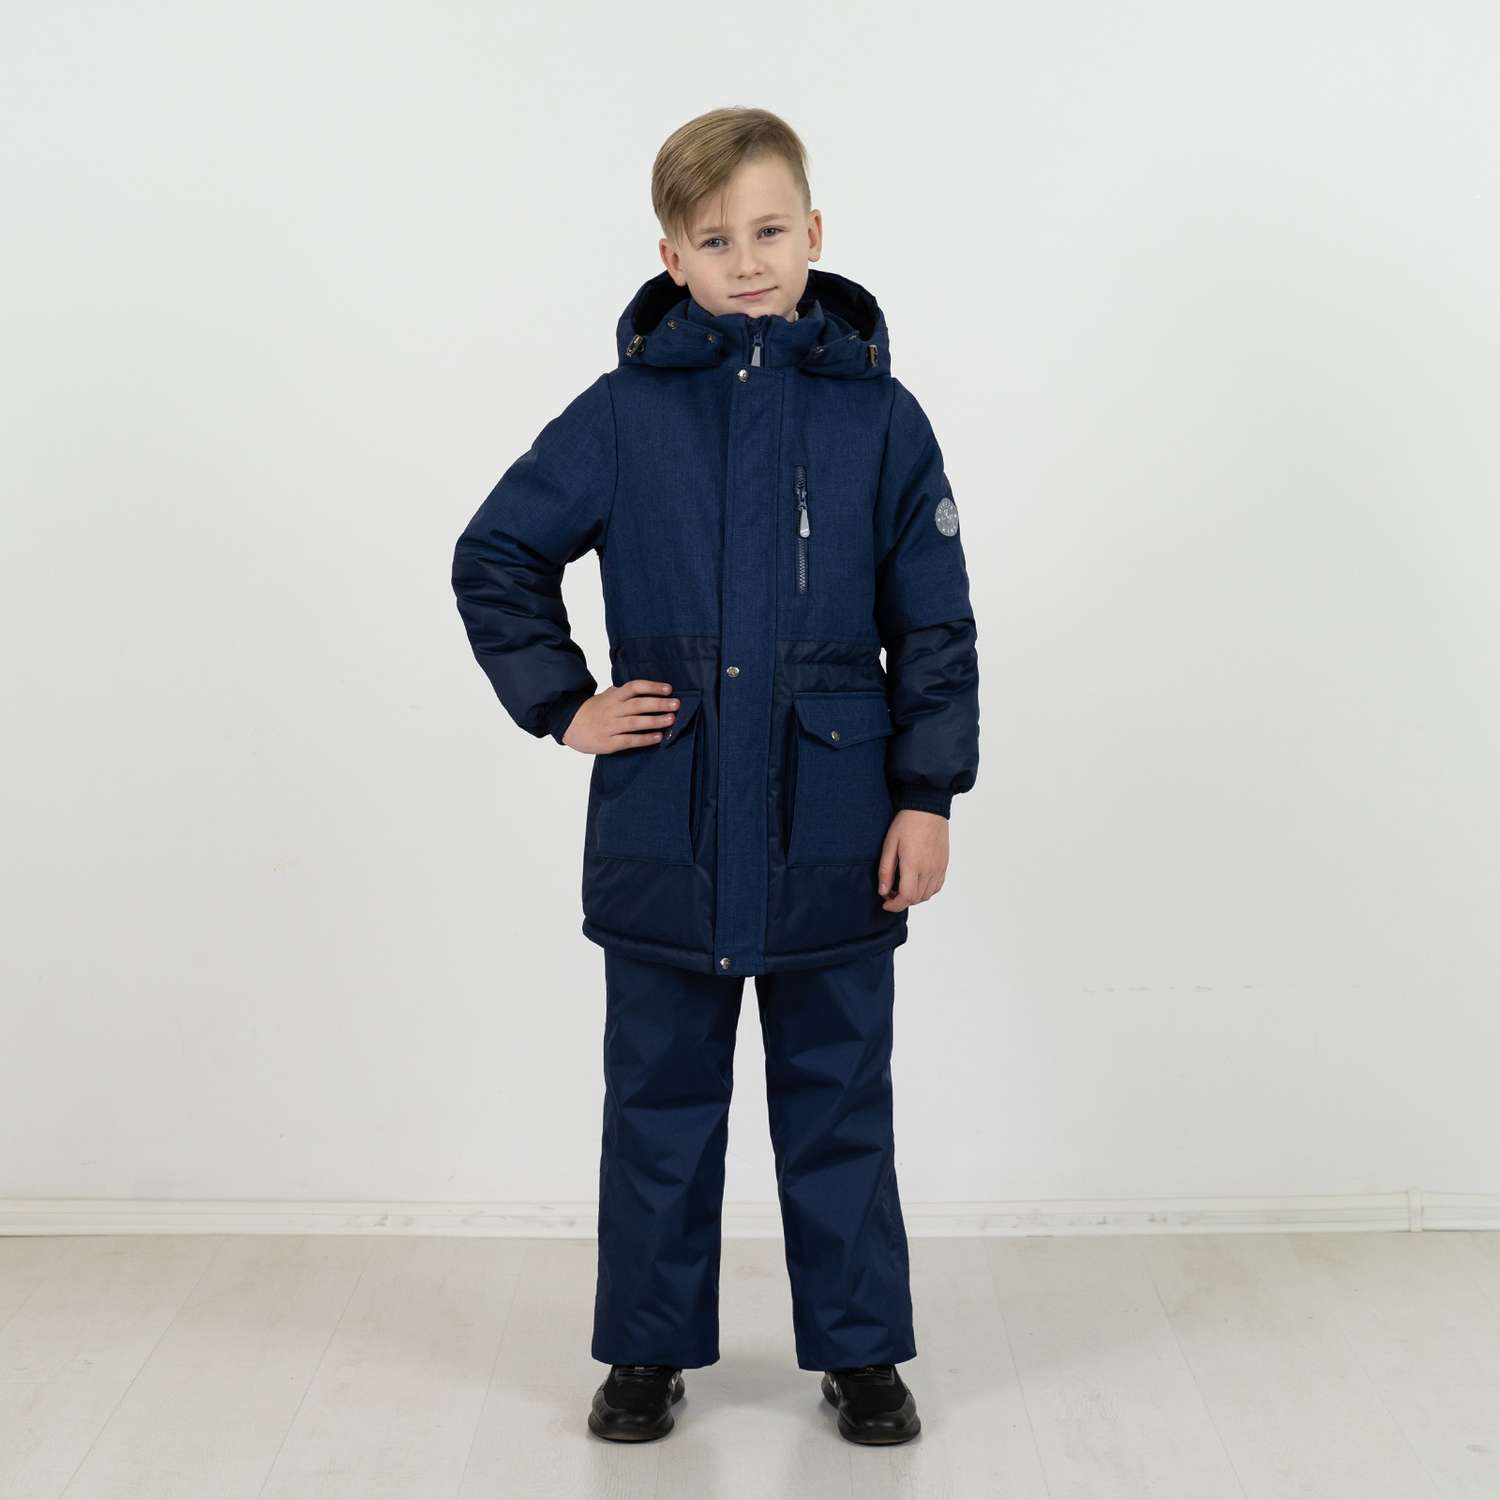 Куртка Arctic kids 70-046 темно-синий - фото 2